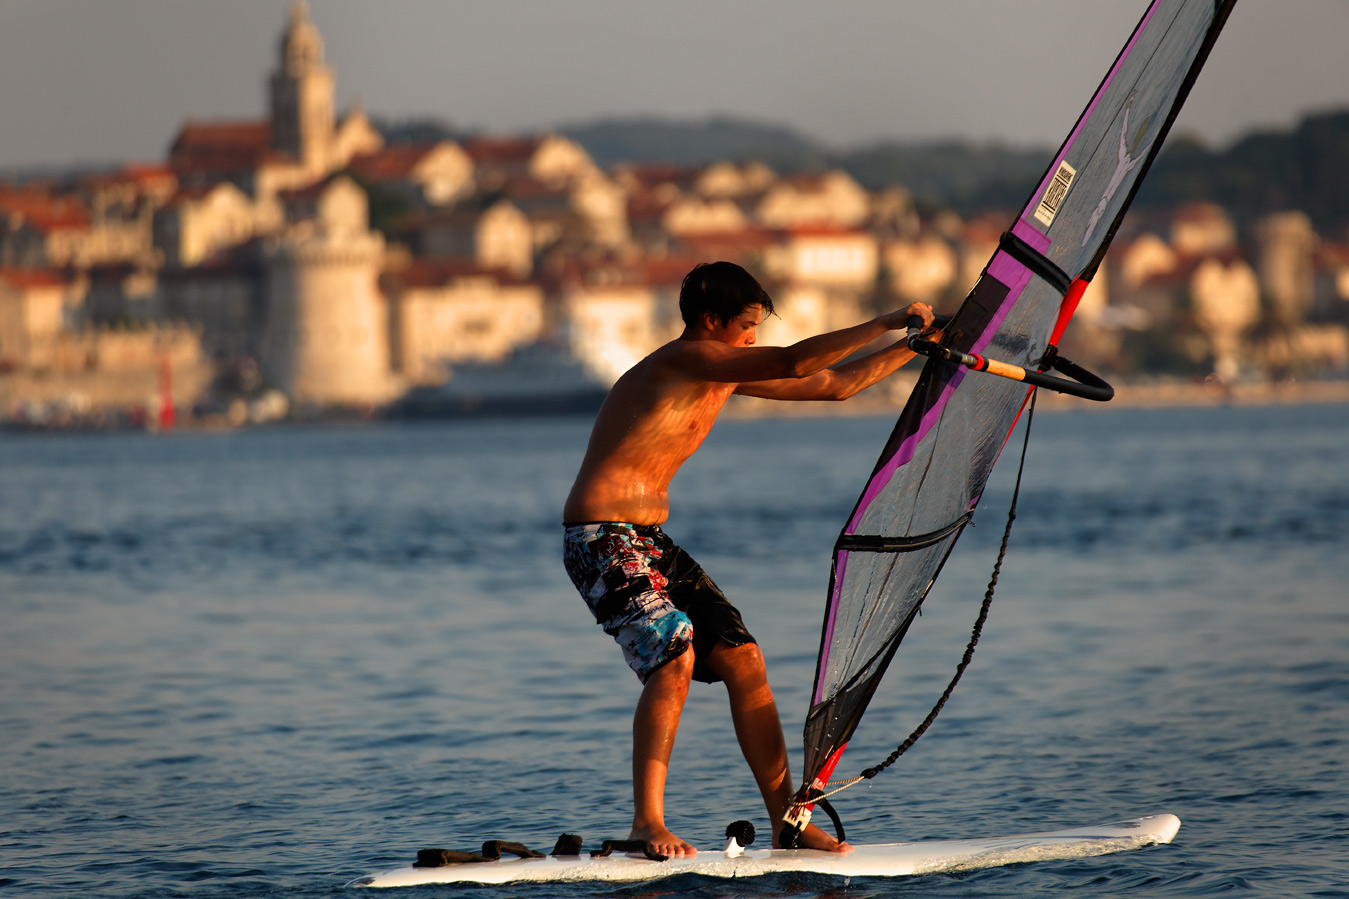 peljesac, croatia, adriatic sea, adriatic coast, pelješac, windsurfing